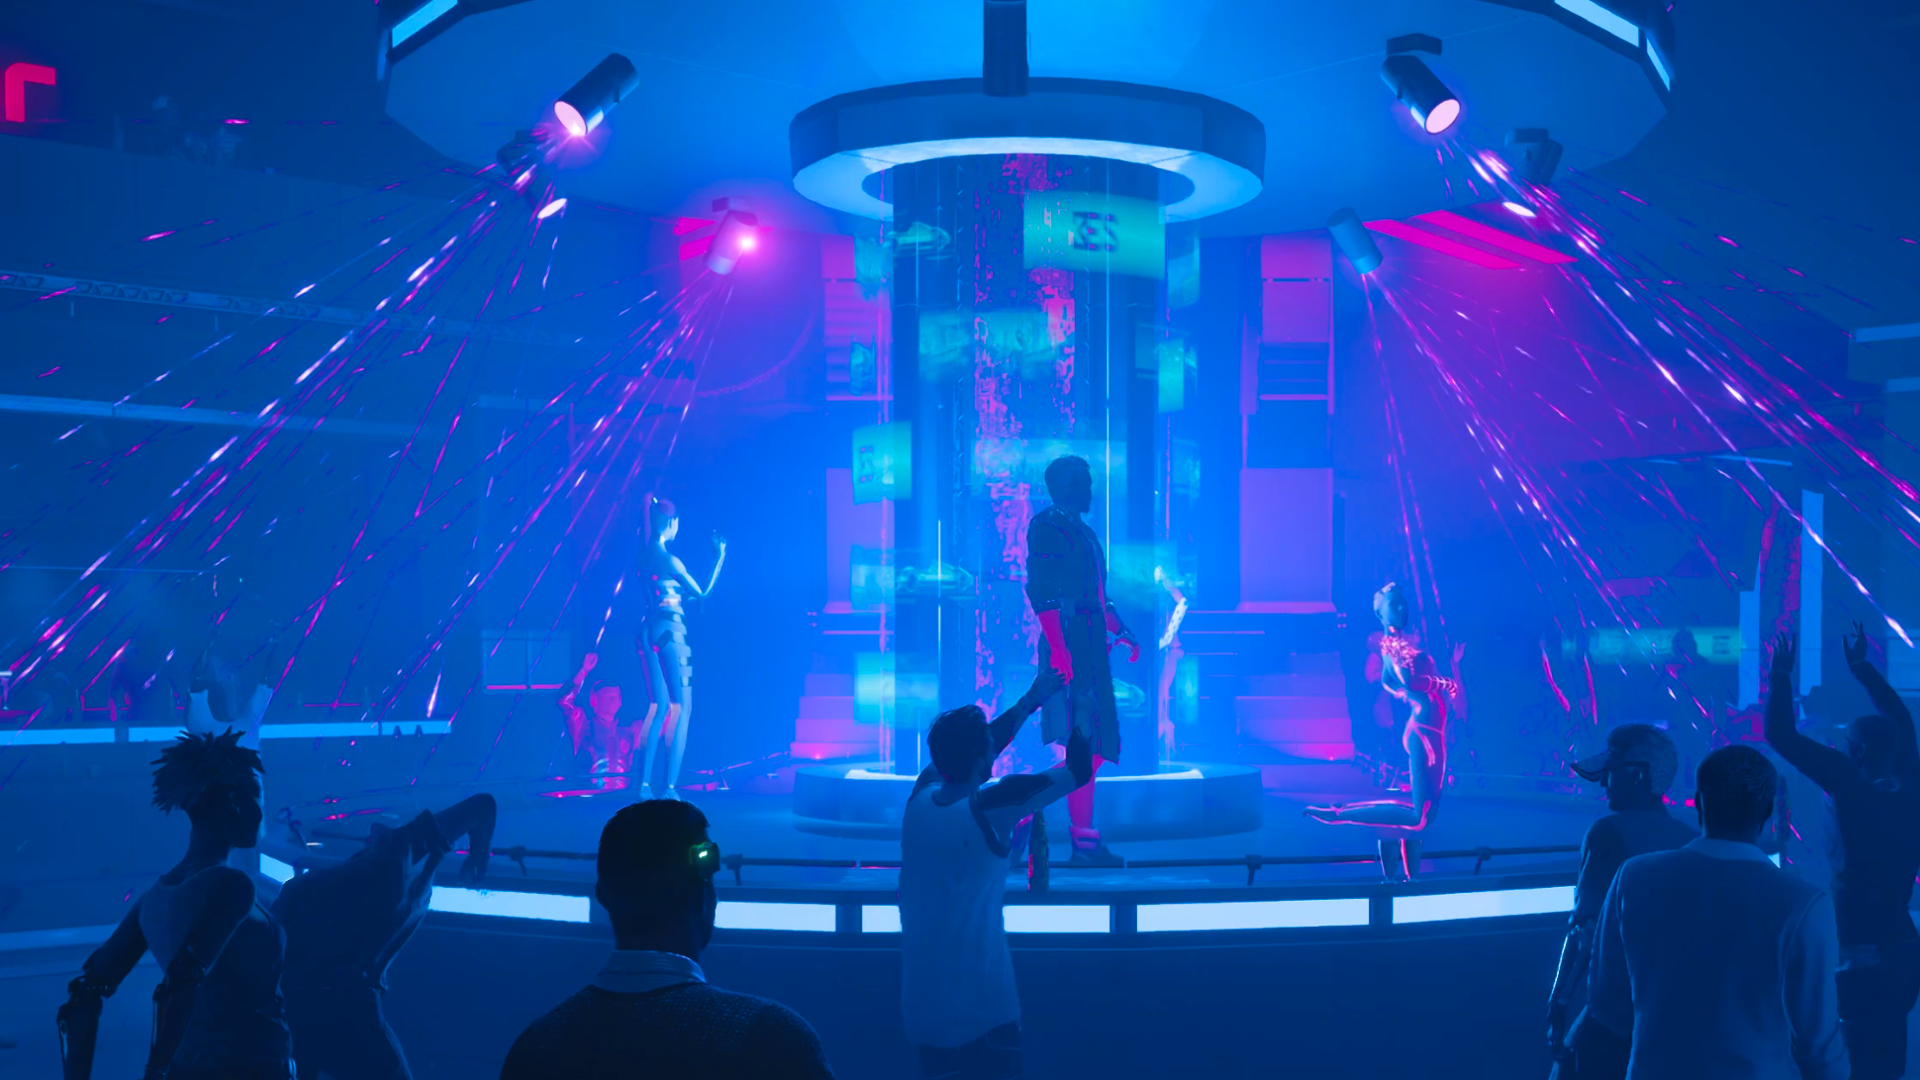 Screenshot aus dem Spiel Cyberpunk 2077. Ein Blick in den Braindance-Club Empathy. Auf einer Bühne tanzen Strupperinnen und ein Stripper.